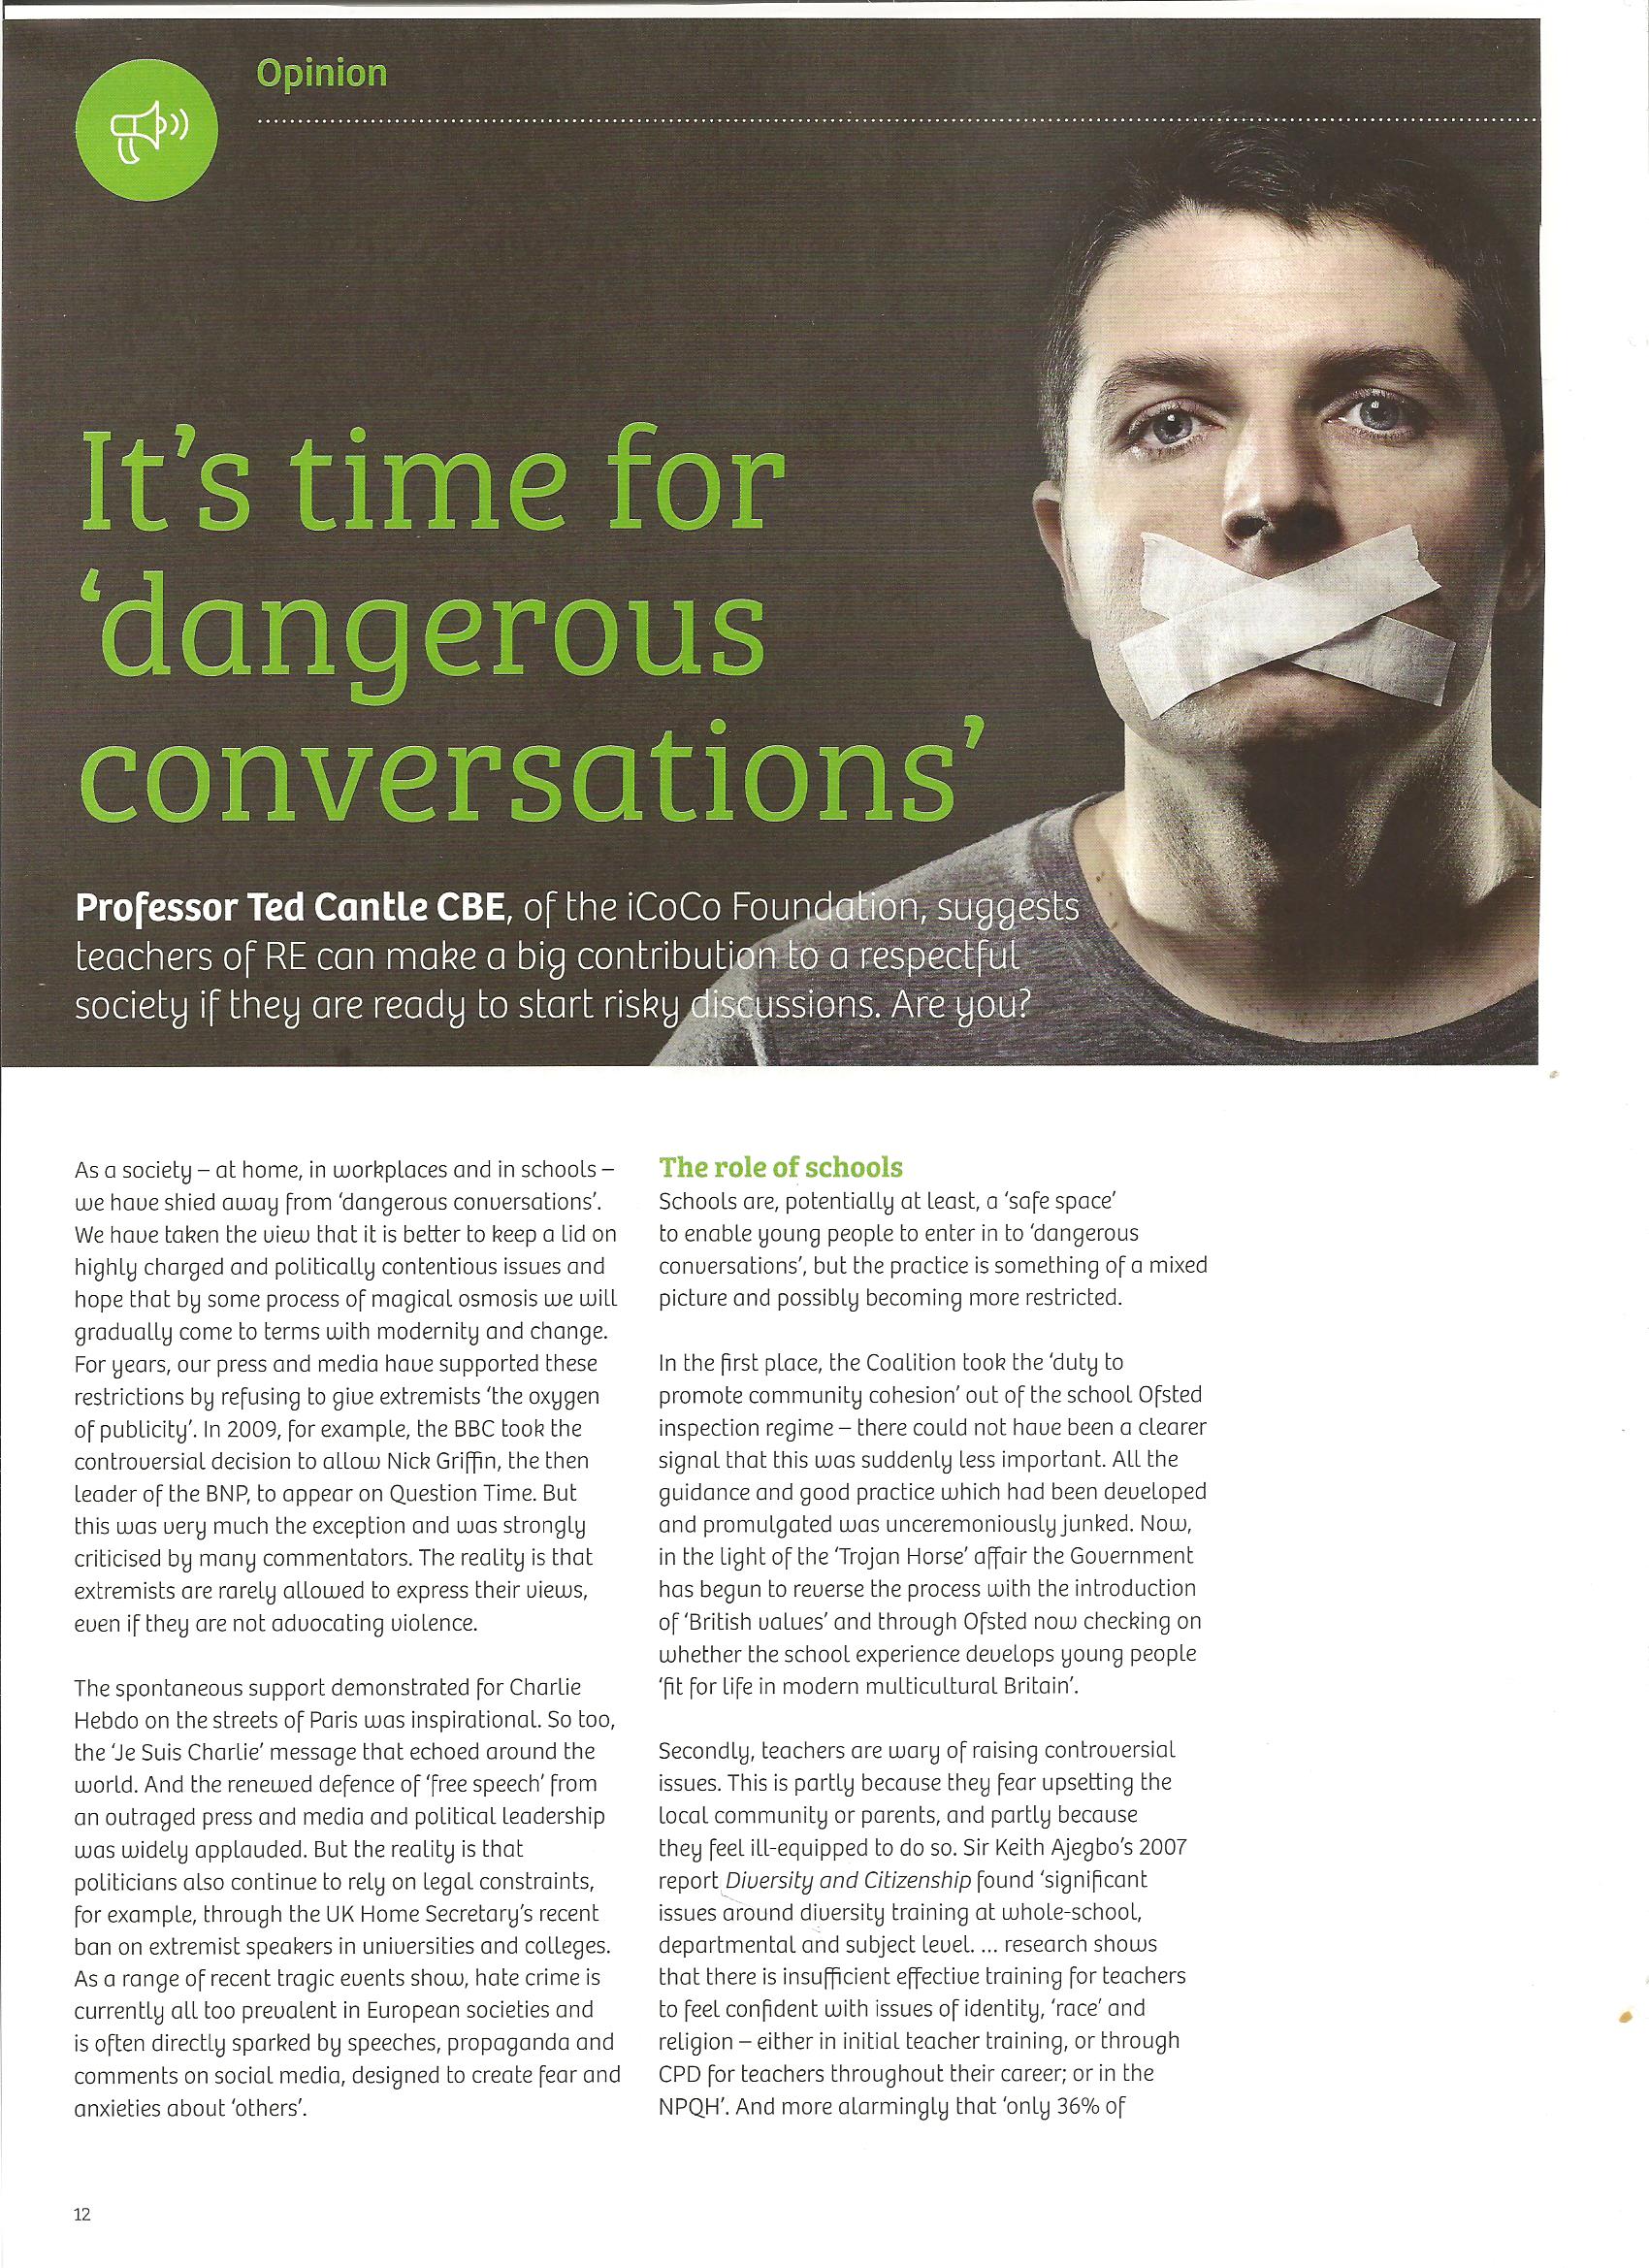 It's Time for Dangerous Conversations REtoday 2015 Vol 33.1 p1 001